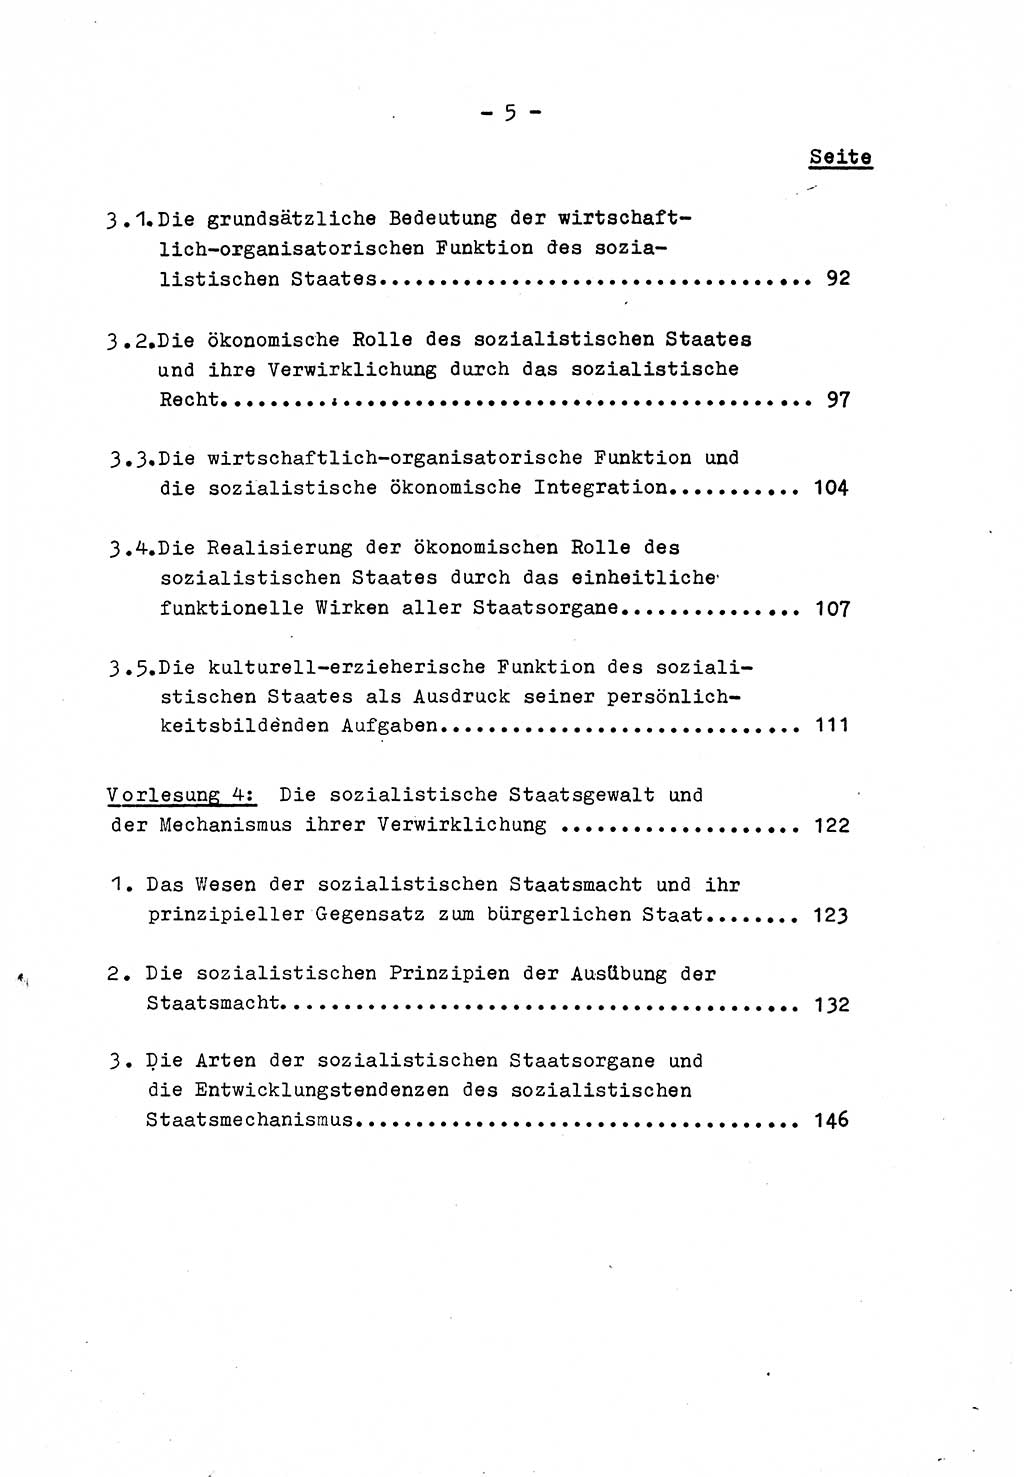 Marxistisch-leninistische Staats- und Rechtstheorie [Deutsche Demokratische Republik (DDR)] 1975, Seite 5 (ML St.-R.-Th. DDR 1975, S. 5)